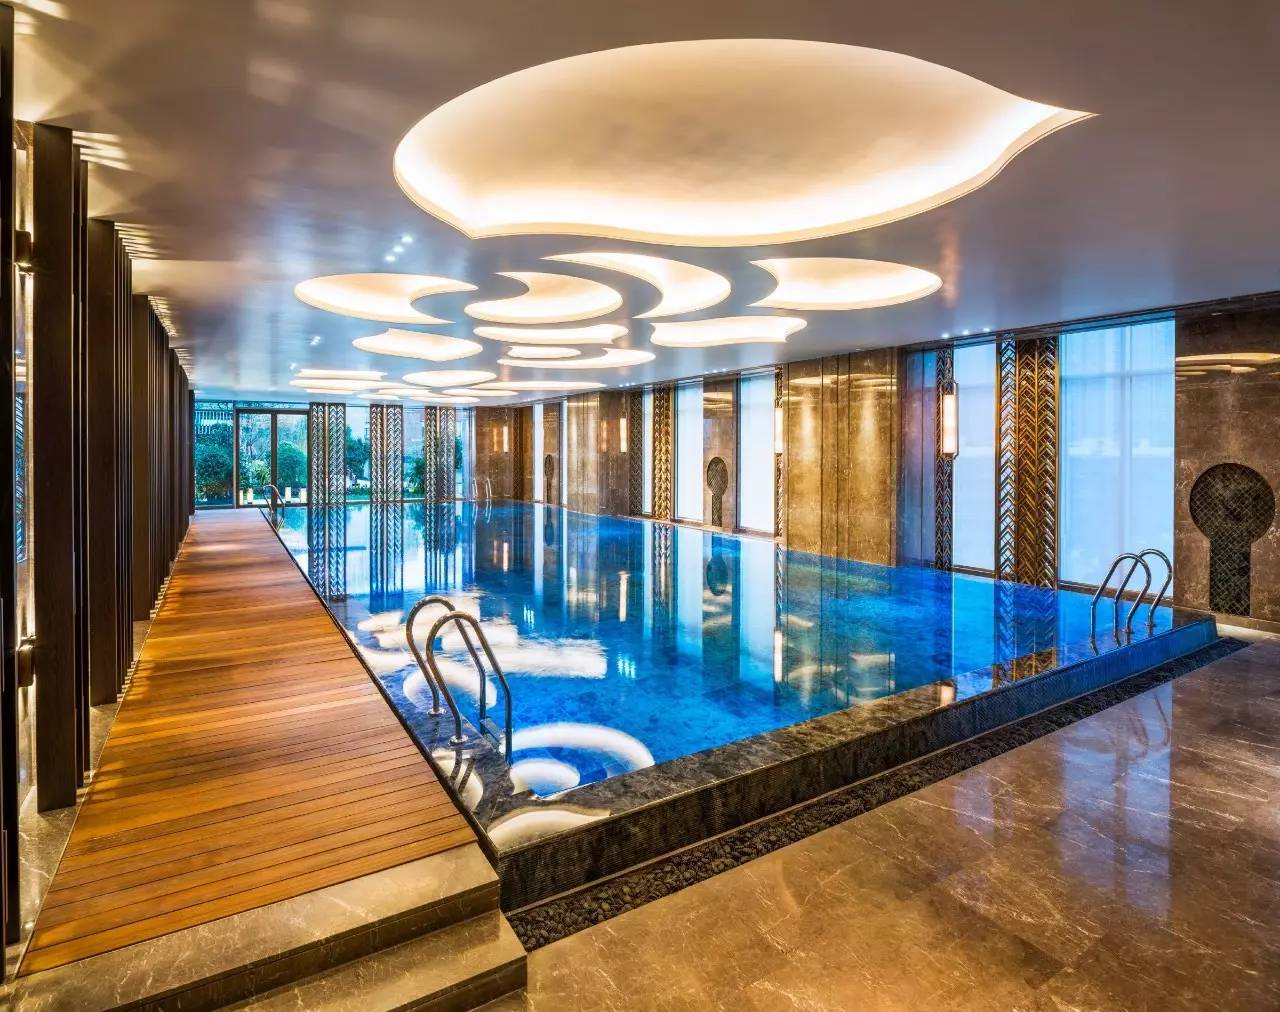 无限水循环泳池 成都万达瑞华酒店游泳池位于酒店6层,是高端会所